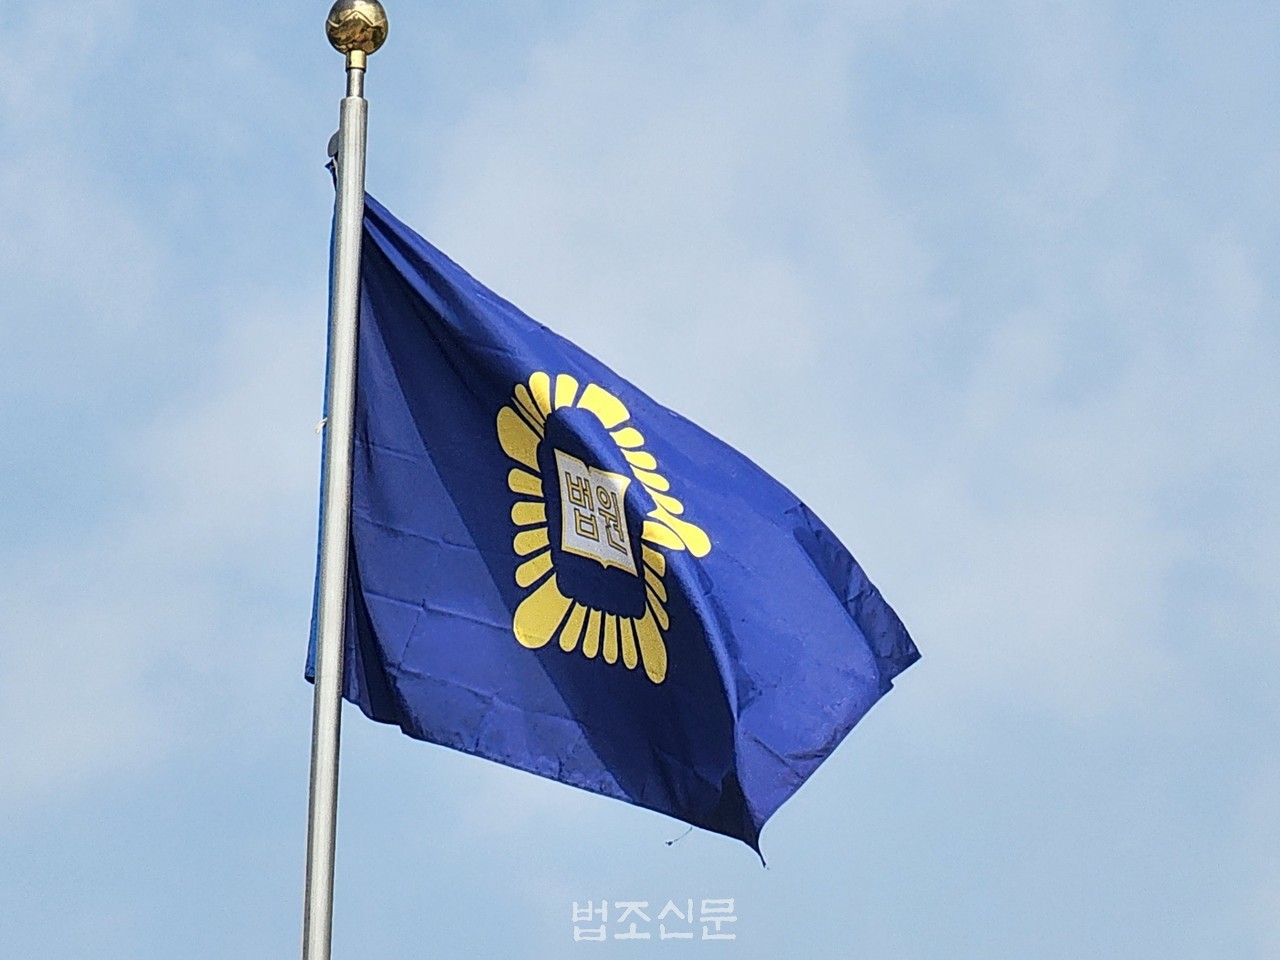 사진: 법원 깃발